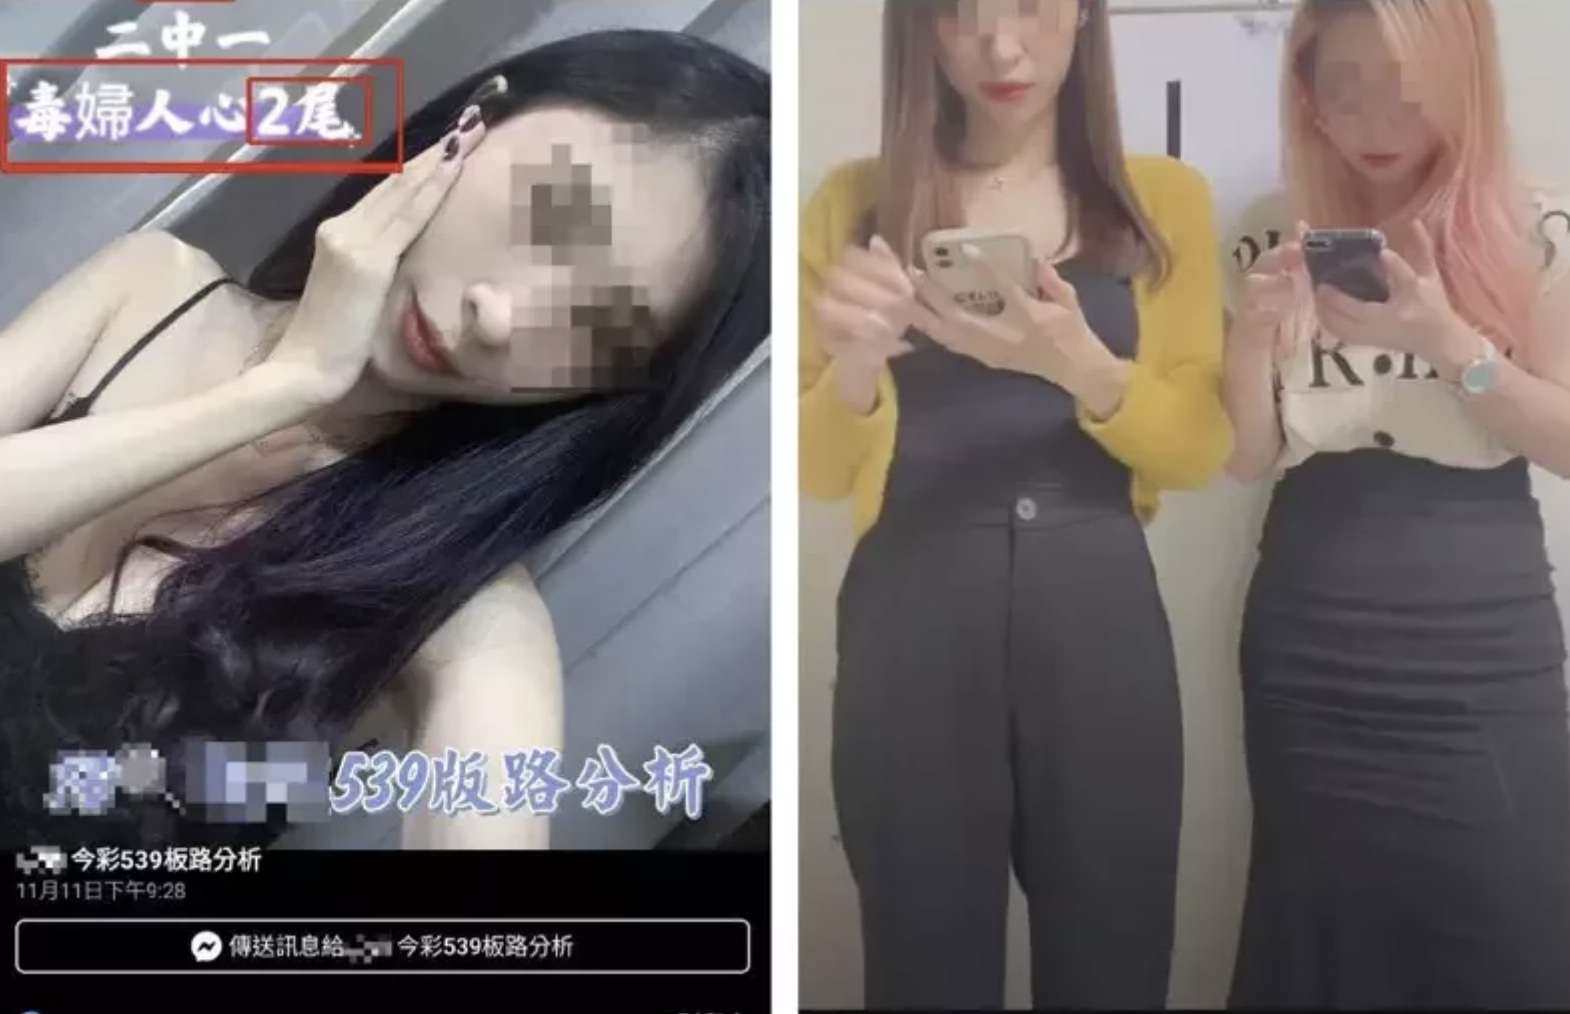 TU娛樂城 博弈網找女友當直播主 遭逮